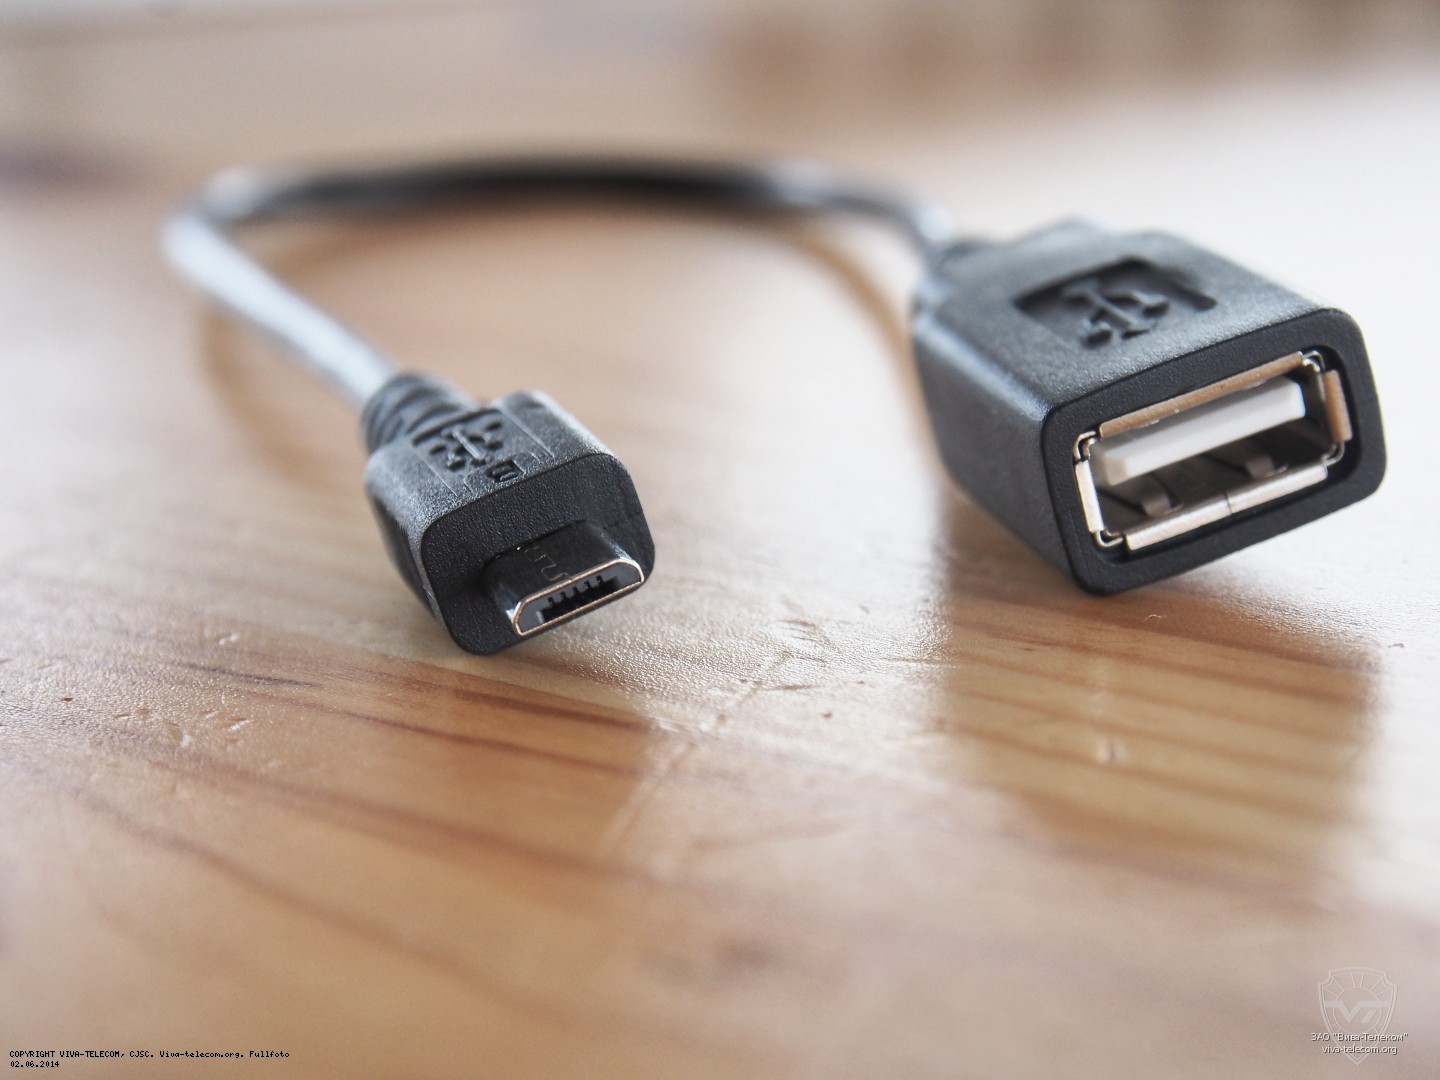    USB  Mikrotik CCR1016-12G